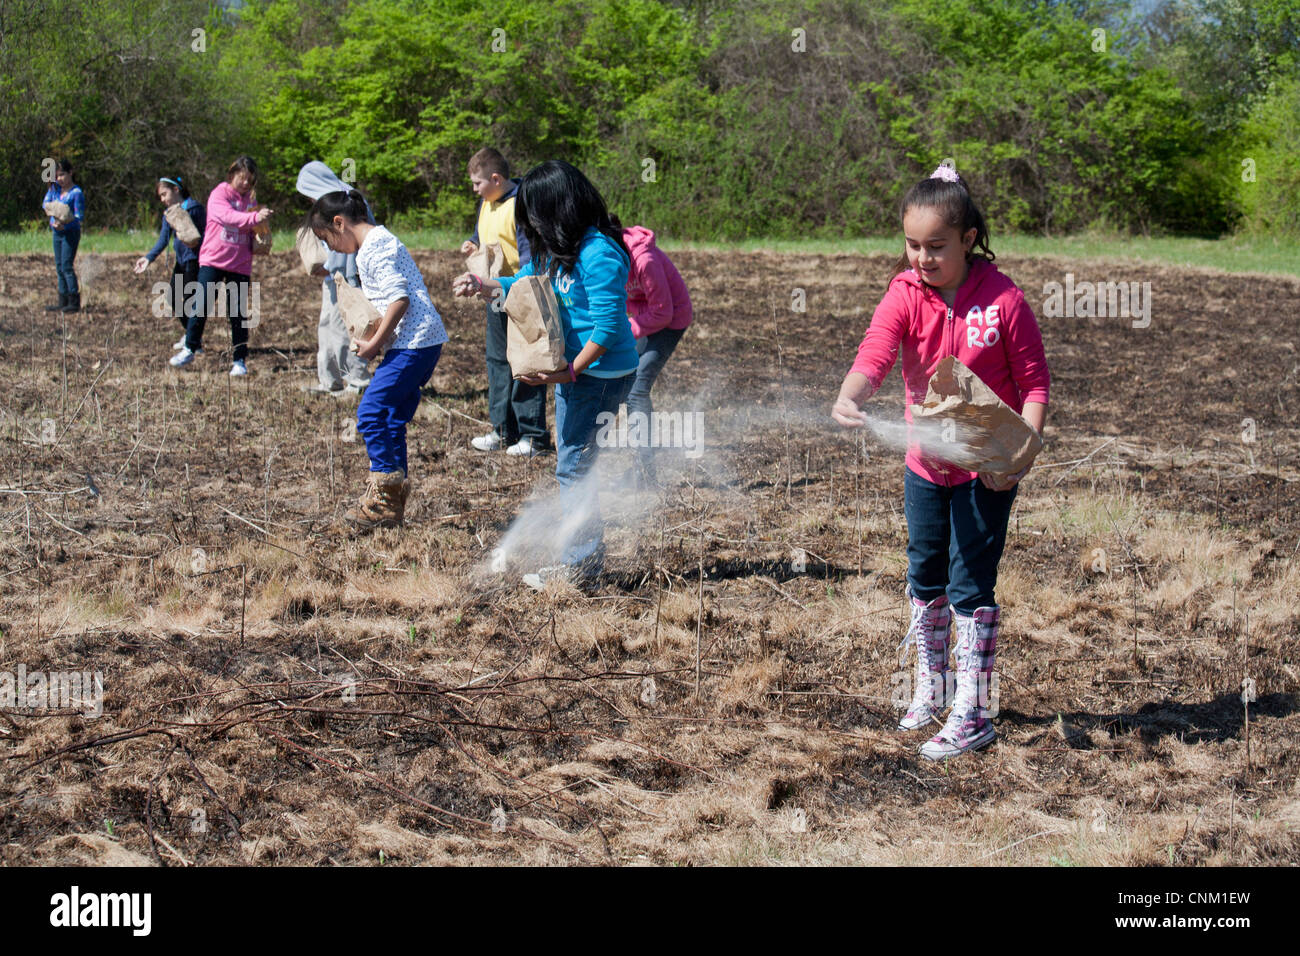 Grundschulkinder säen um native Prairie wiederherstellen, nachdem es absichtlich verbrannt wurde, invasive Arten zu beseitigen. Stockfoto